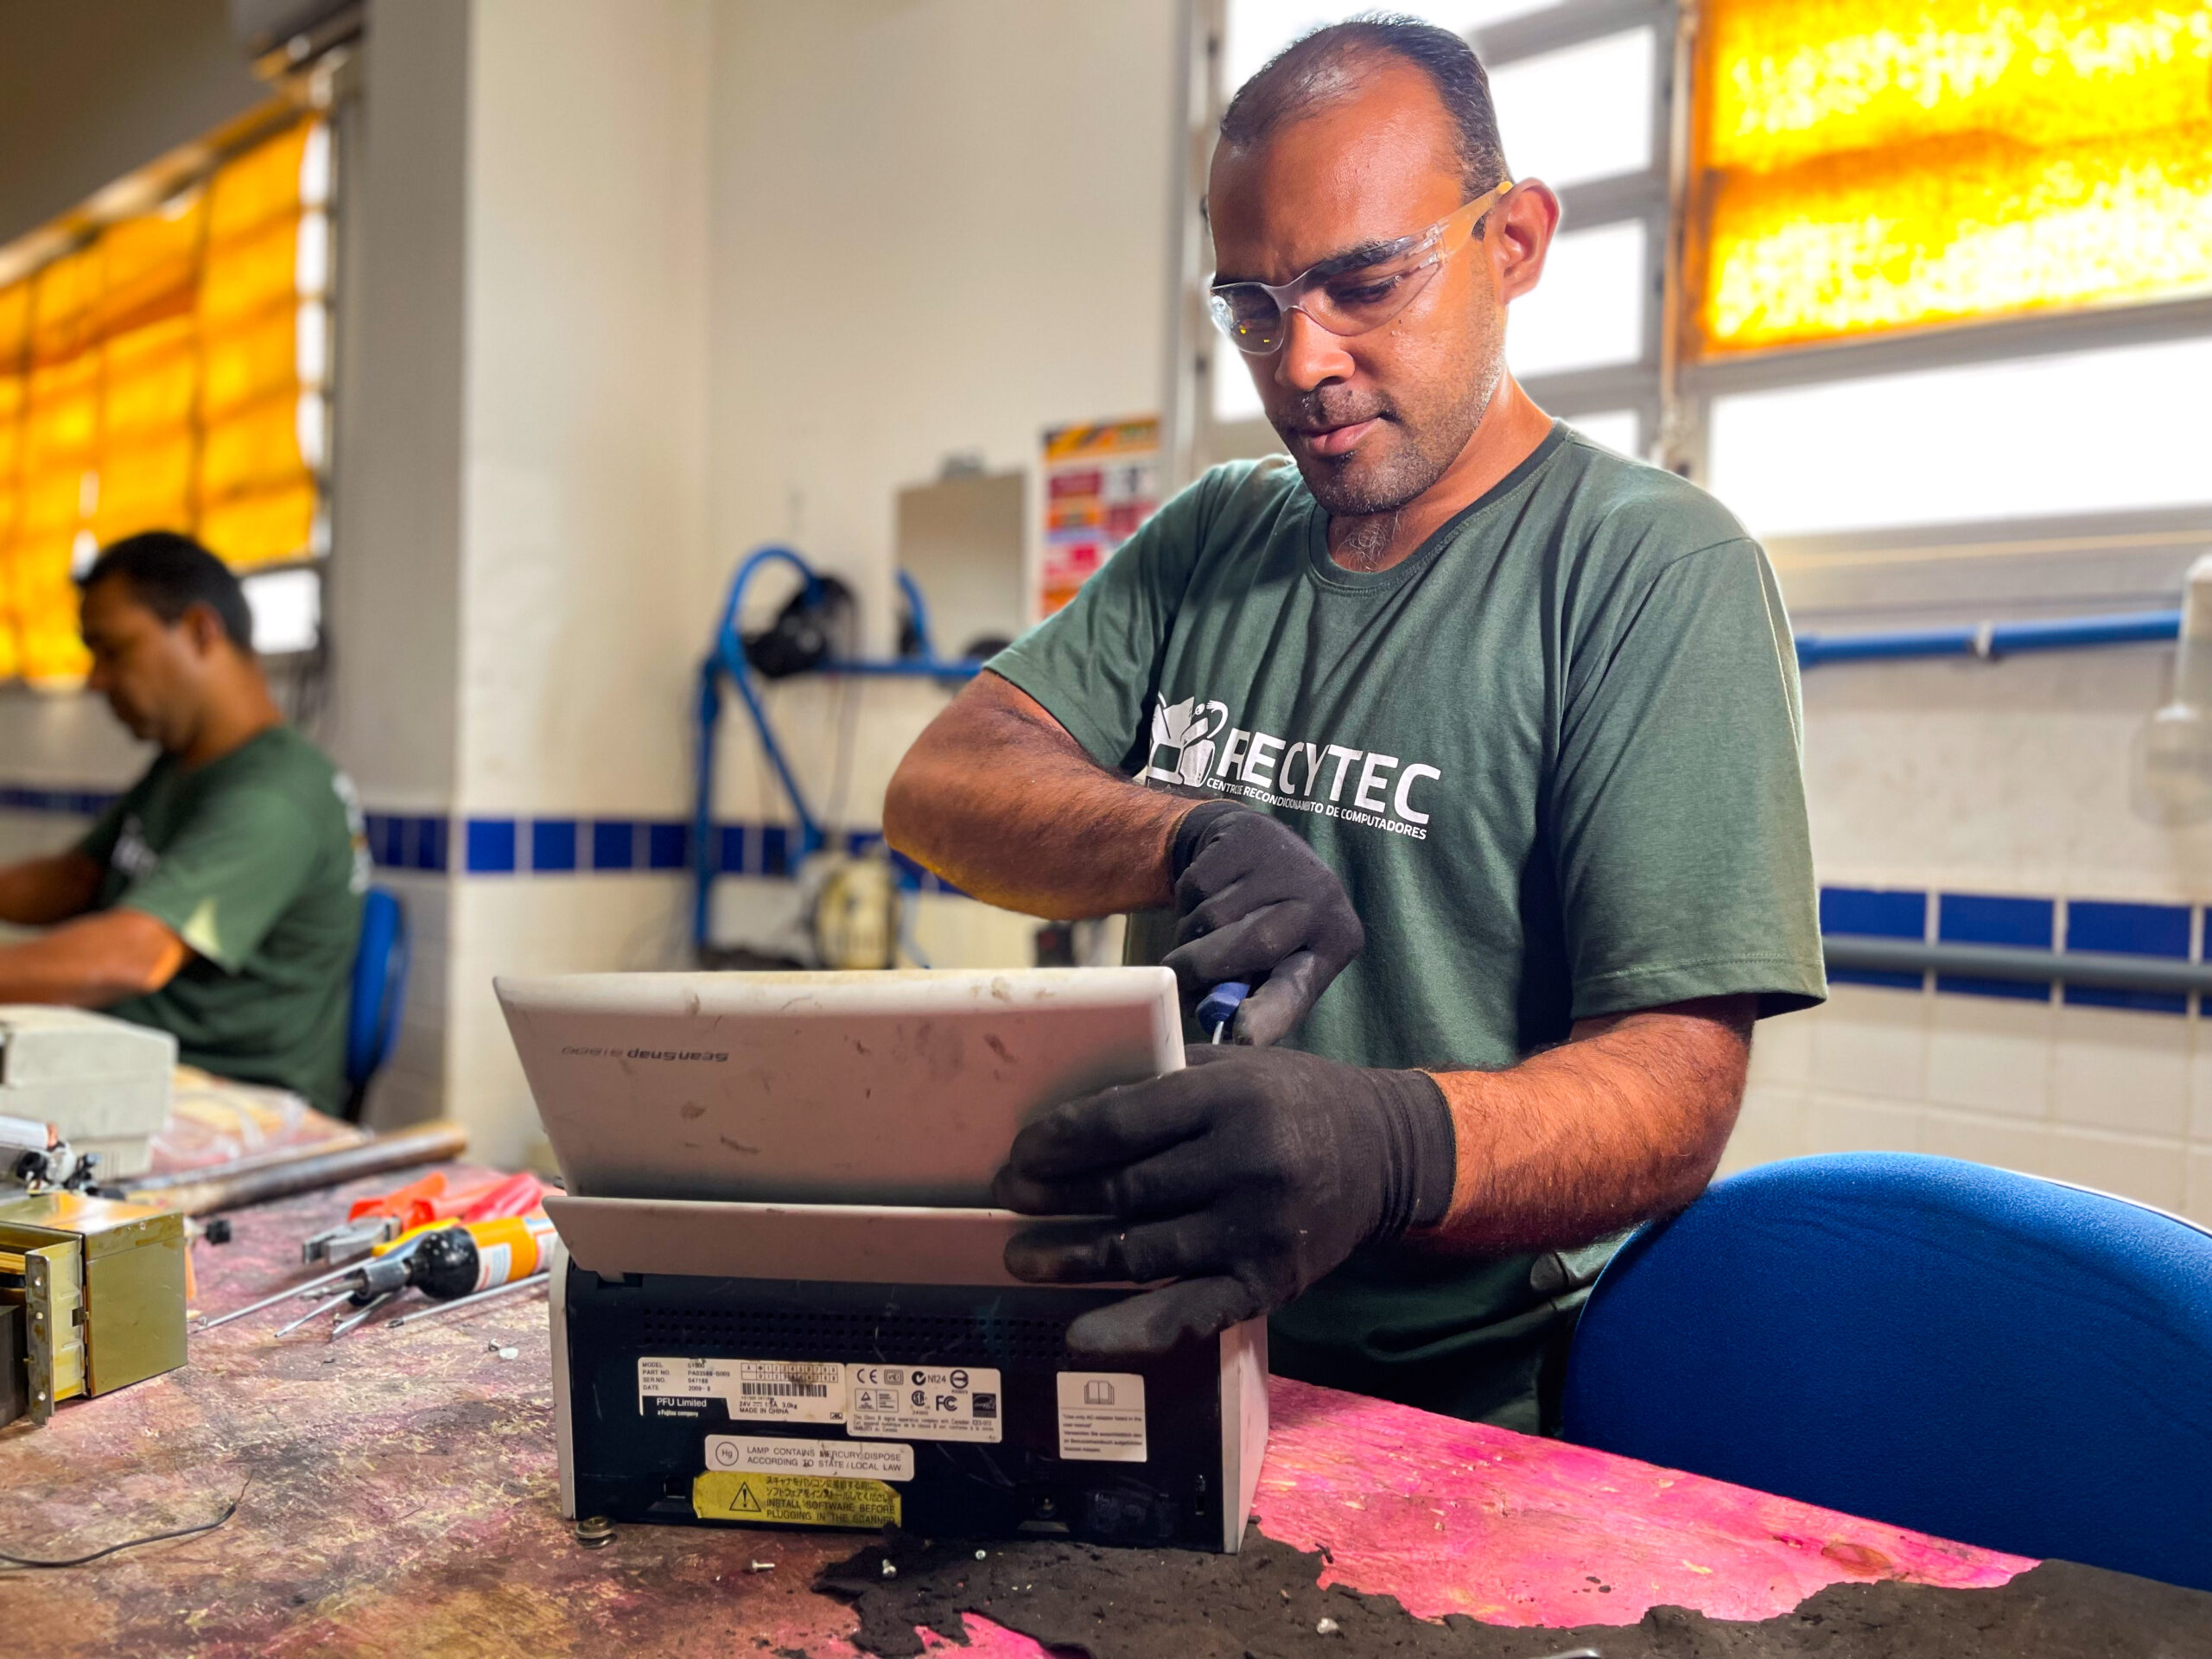 Programa Recytec recolhe mais de 75 toneladas de resíduos eletrônicos em Mato Grosso